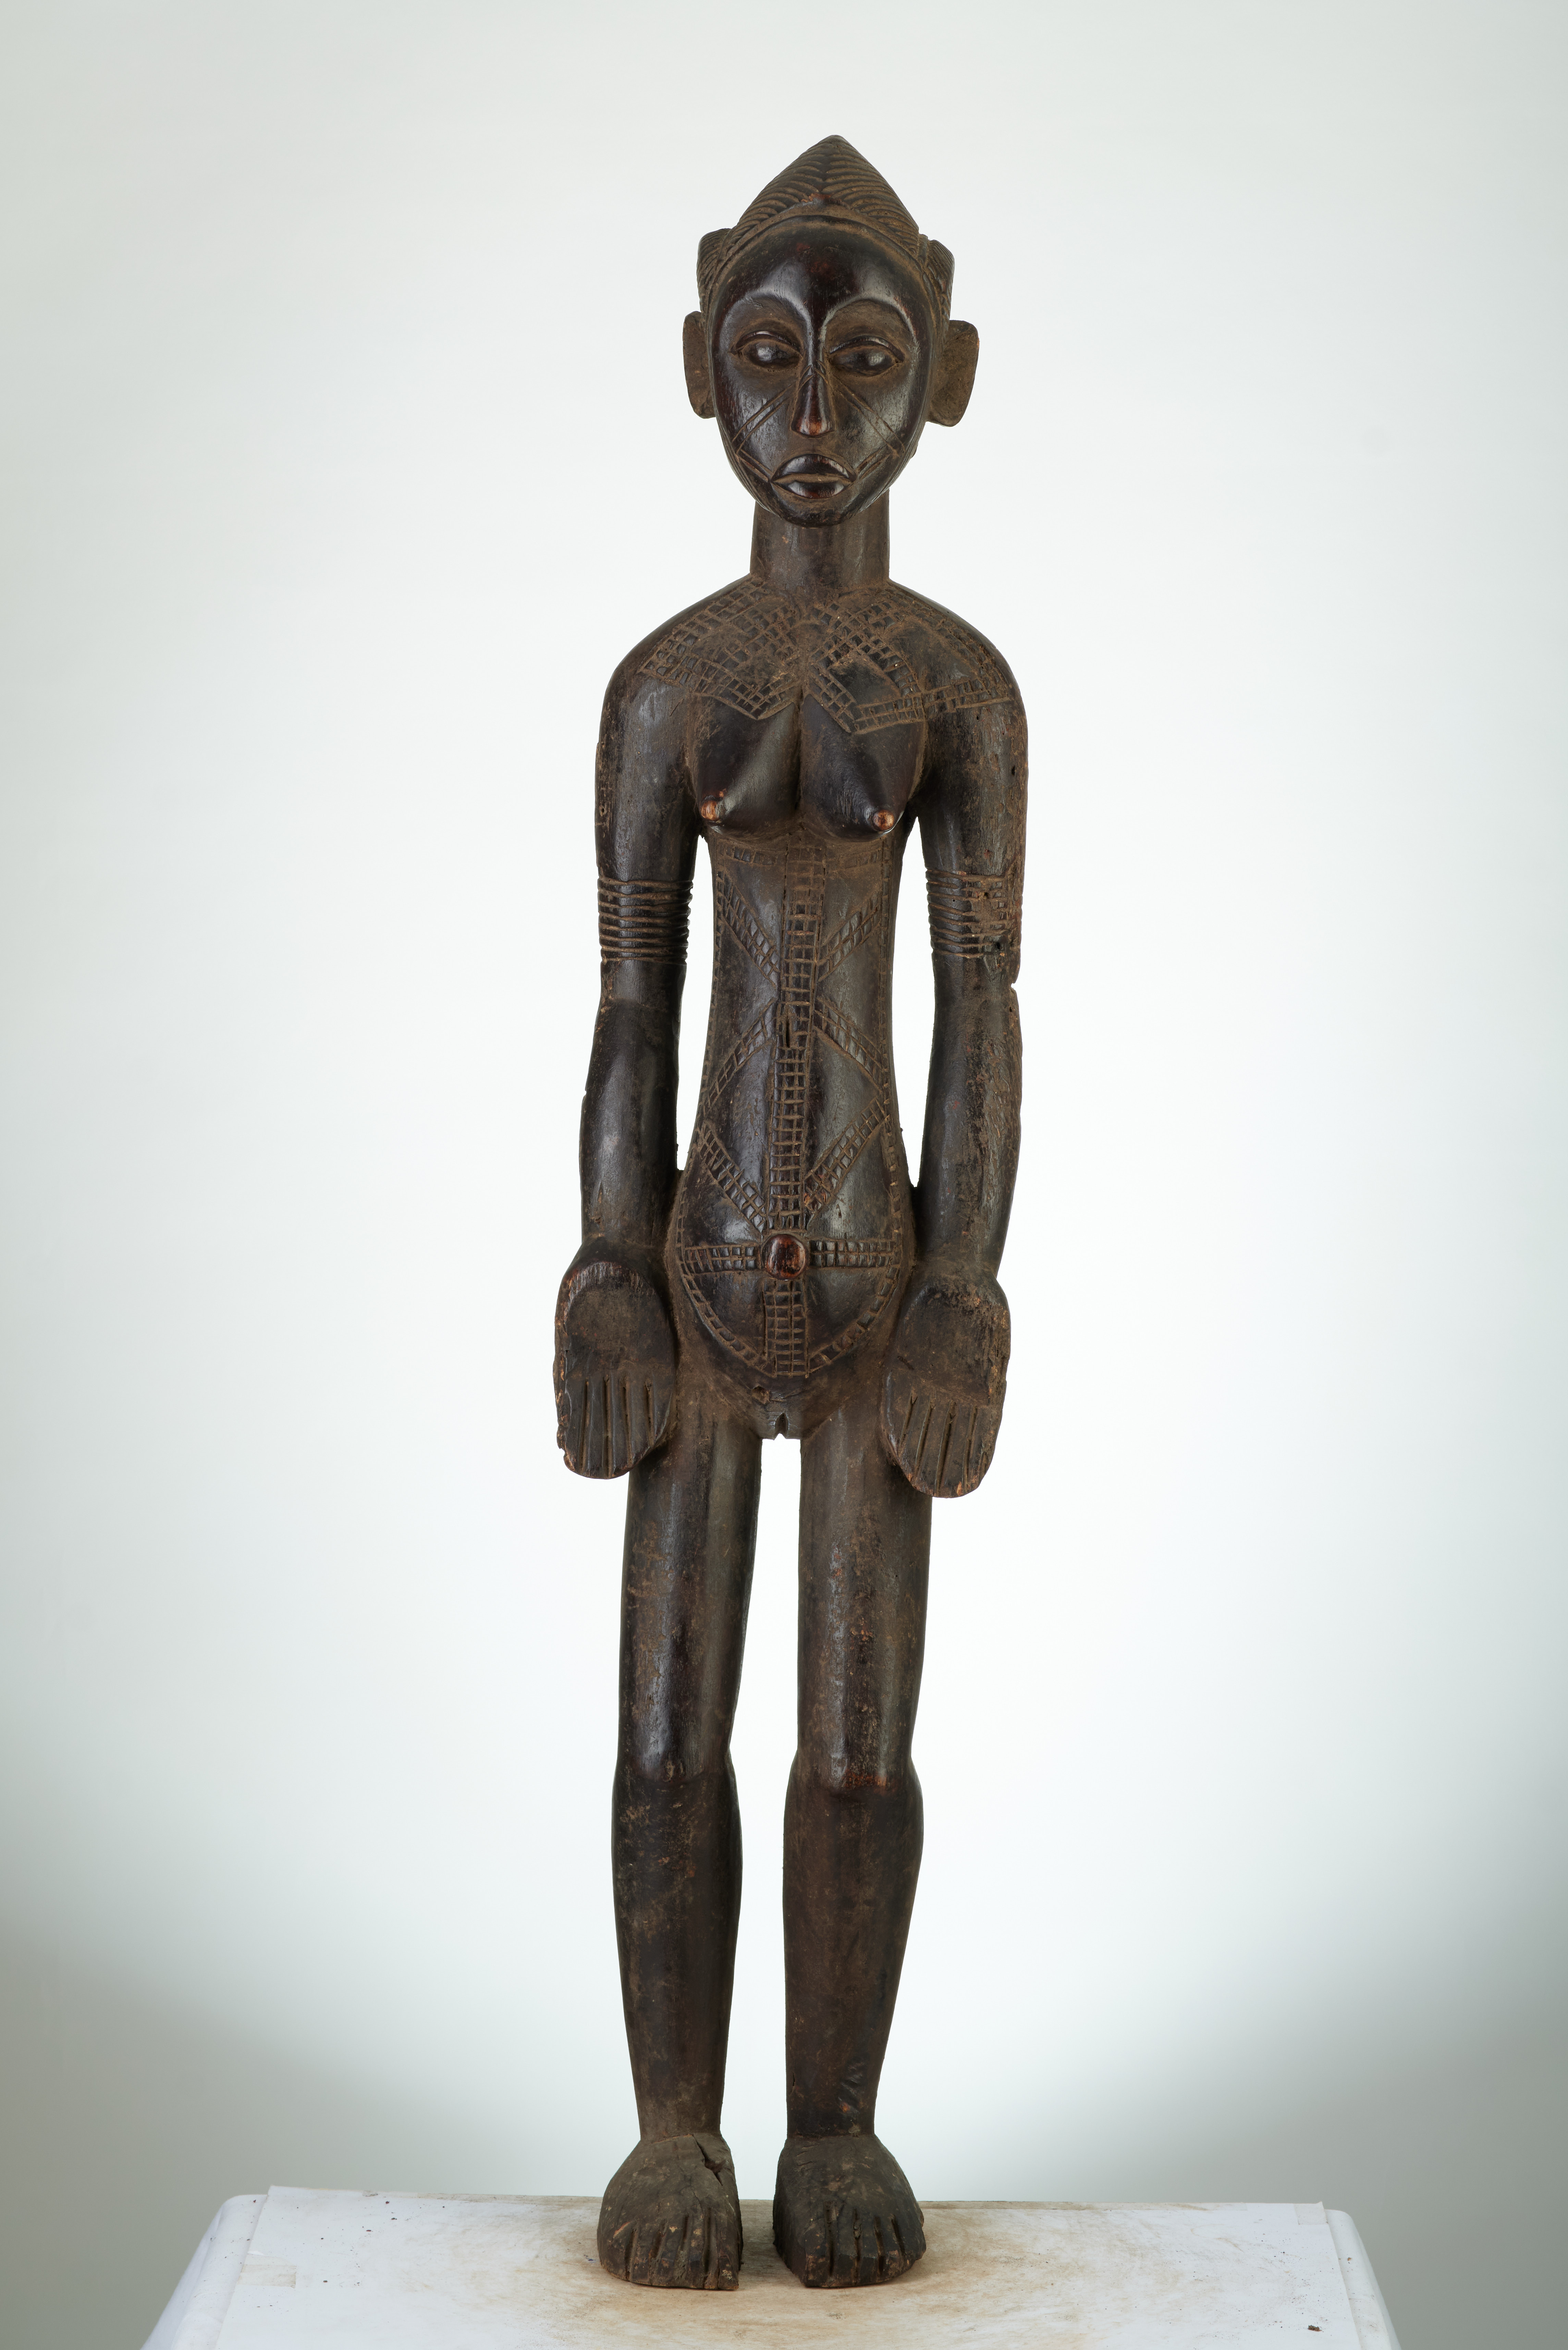 Mossi(statue), d`afrique : Burkina -Faso-, statuette Mossi(statue), masque ancien africain Mossi(statue), art du Burkina -Faso- - Art Africain, collection privées Belgique. Statue africaine de la tribu des Mossi(statue), provenant du Burkina -Faso-, 1175/4395.Bien qu